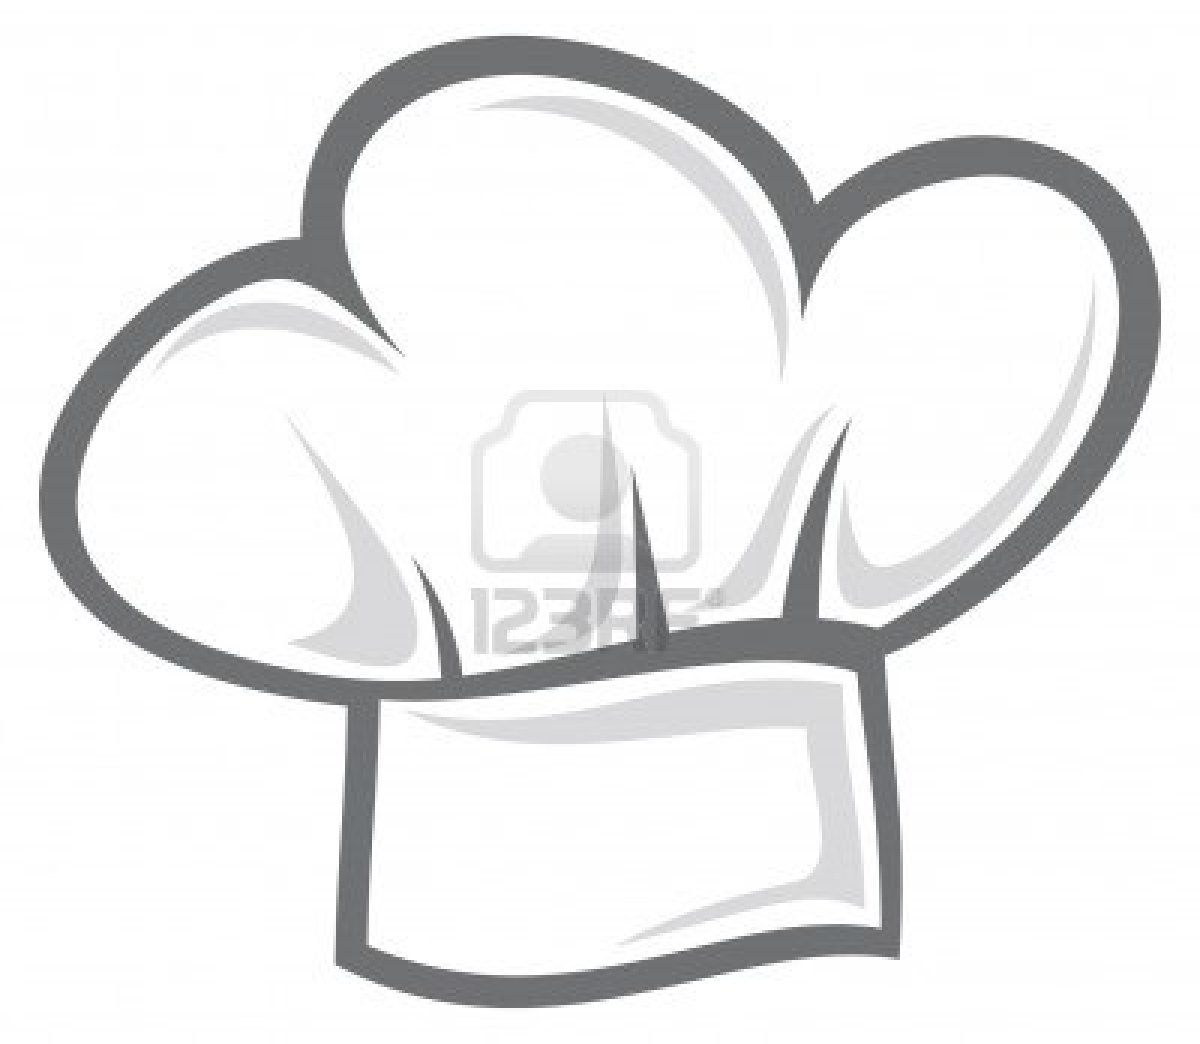 chef hat clipart black white - photo #29